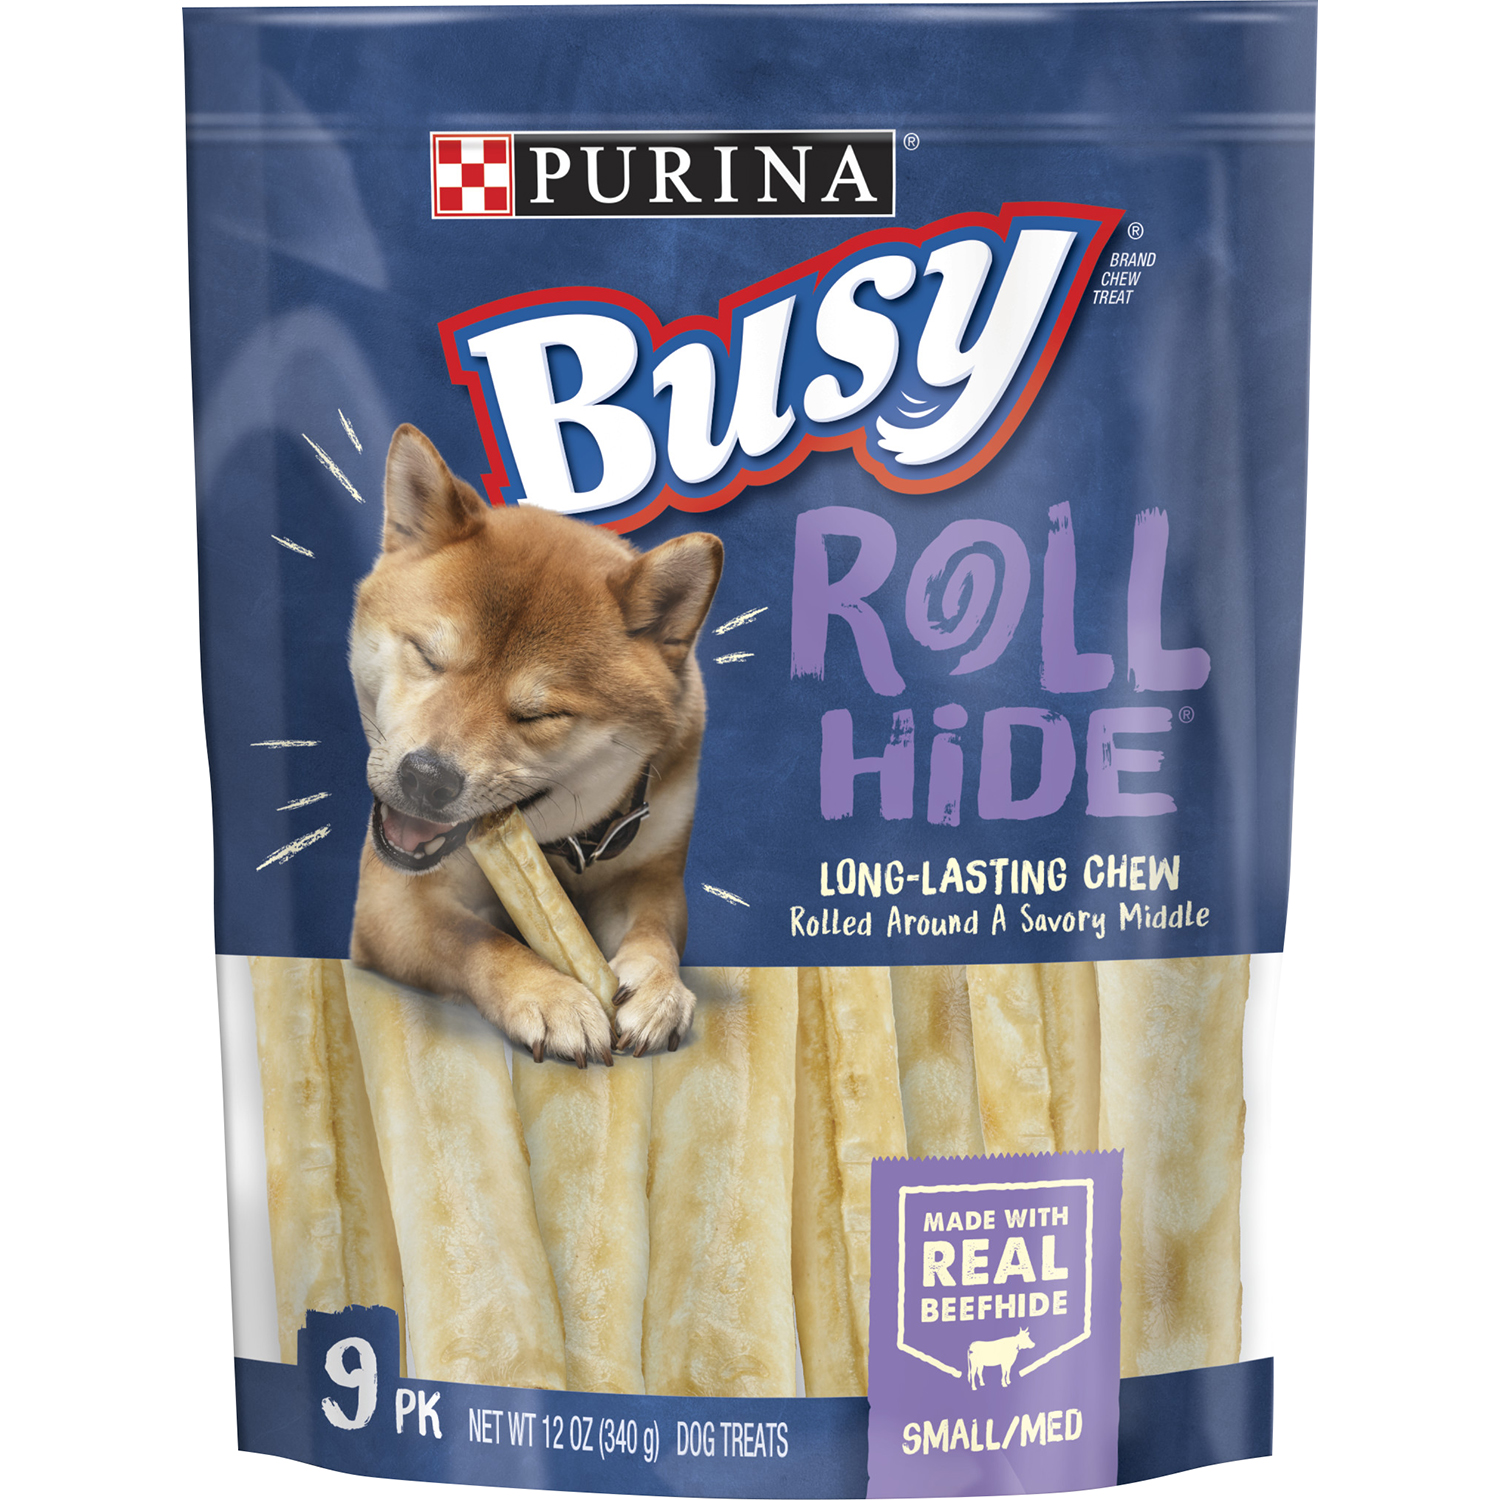 Busy Bone Busy Rollhide Small/Medium Dog Treats 12 oz. Pouch